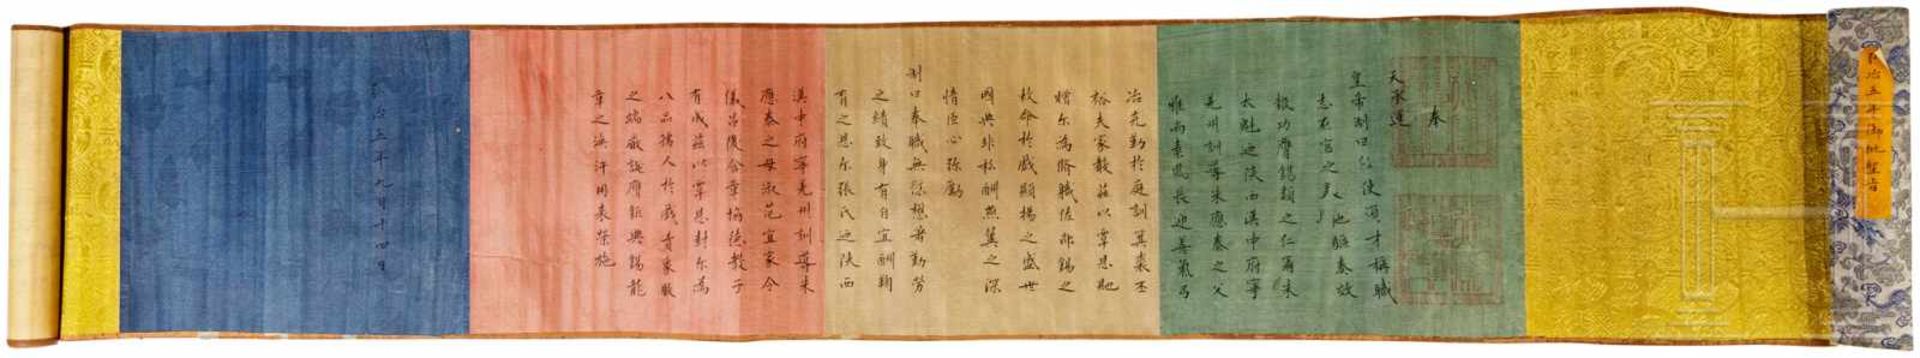 Ernennungsurkunde, China, um 1880Auf grünem, rotem und beigem Papier, die Enden mit gelbem